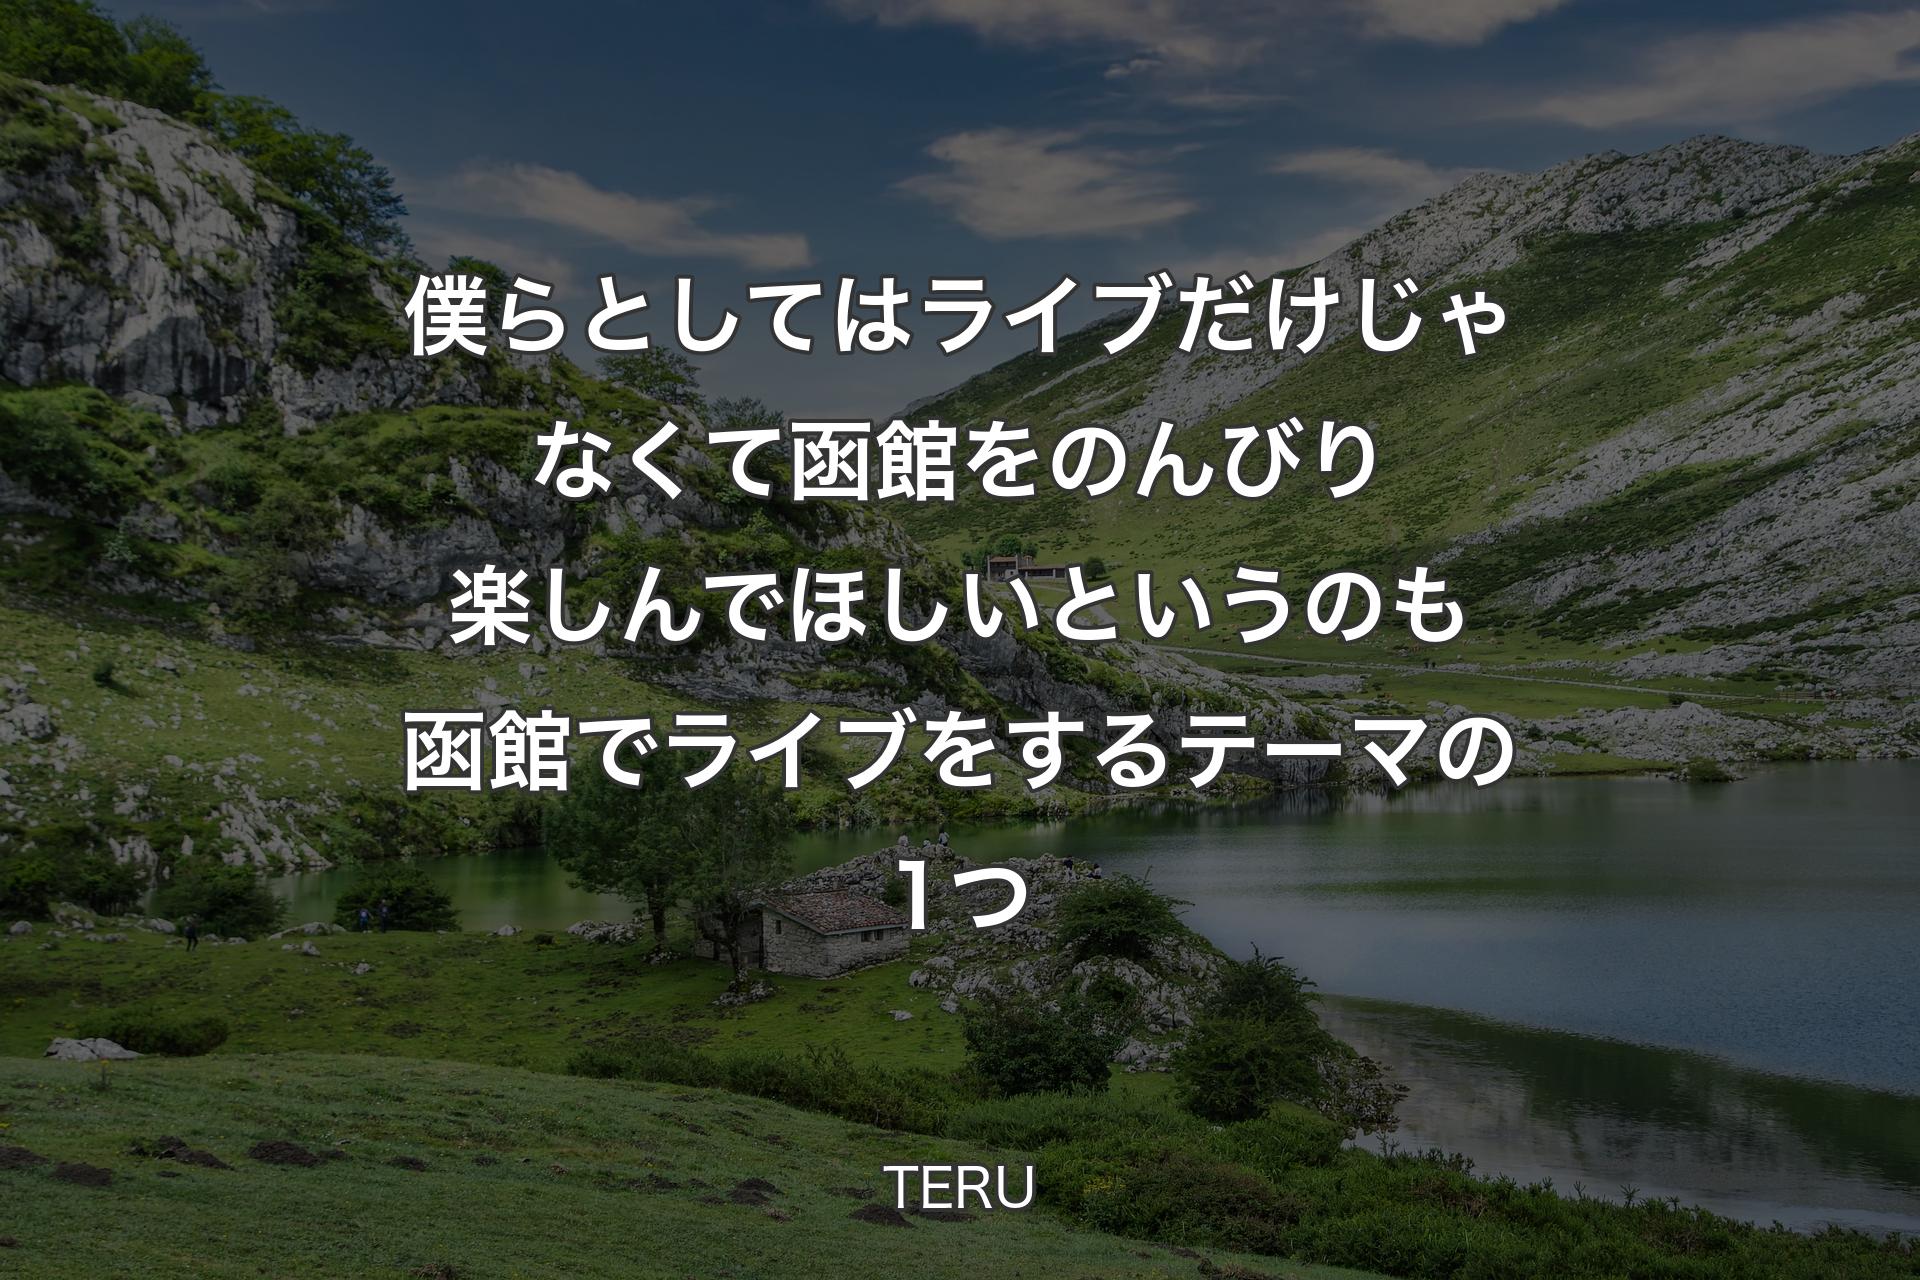 【背景1】僕らとしてはライブだけじゃなくて函館をのんびり楽しんでほしいというのも函館でライブをするテーマの1つ - TERU